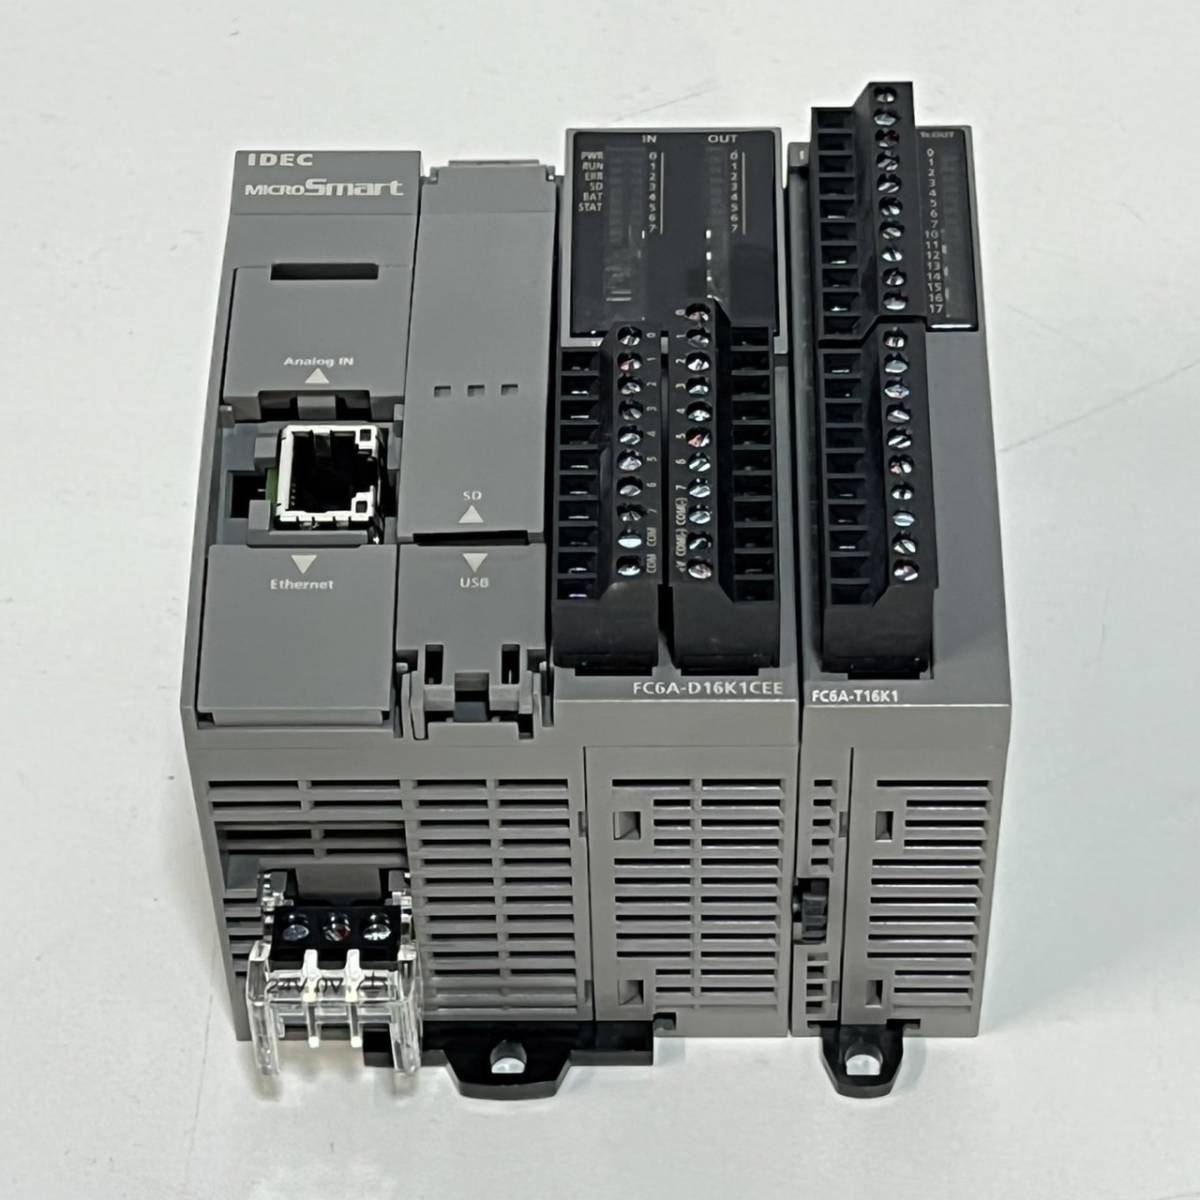 ショッピング公式 ★IDEC(和泉電気)MICROSMART オールインワンタイプ CPUモジュール FC6A-D16K1CEE トランジスタ出力モジュール FC6A-T16K1 セット 